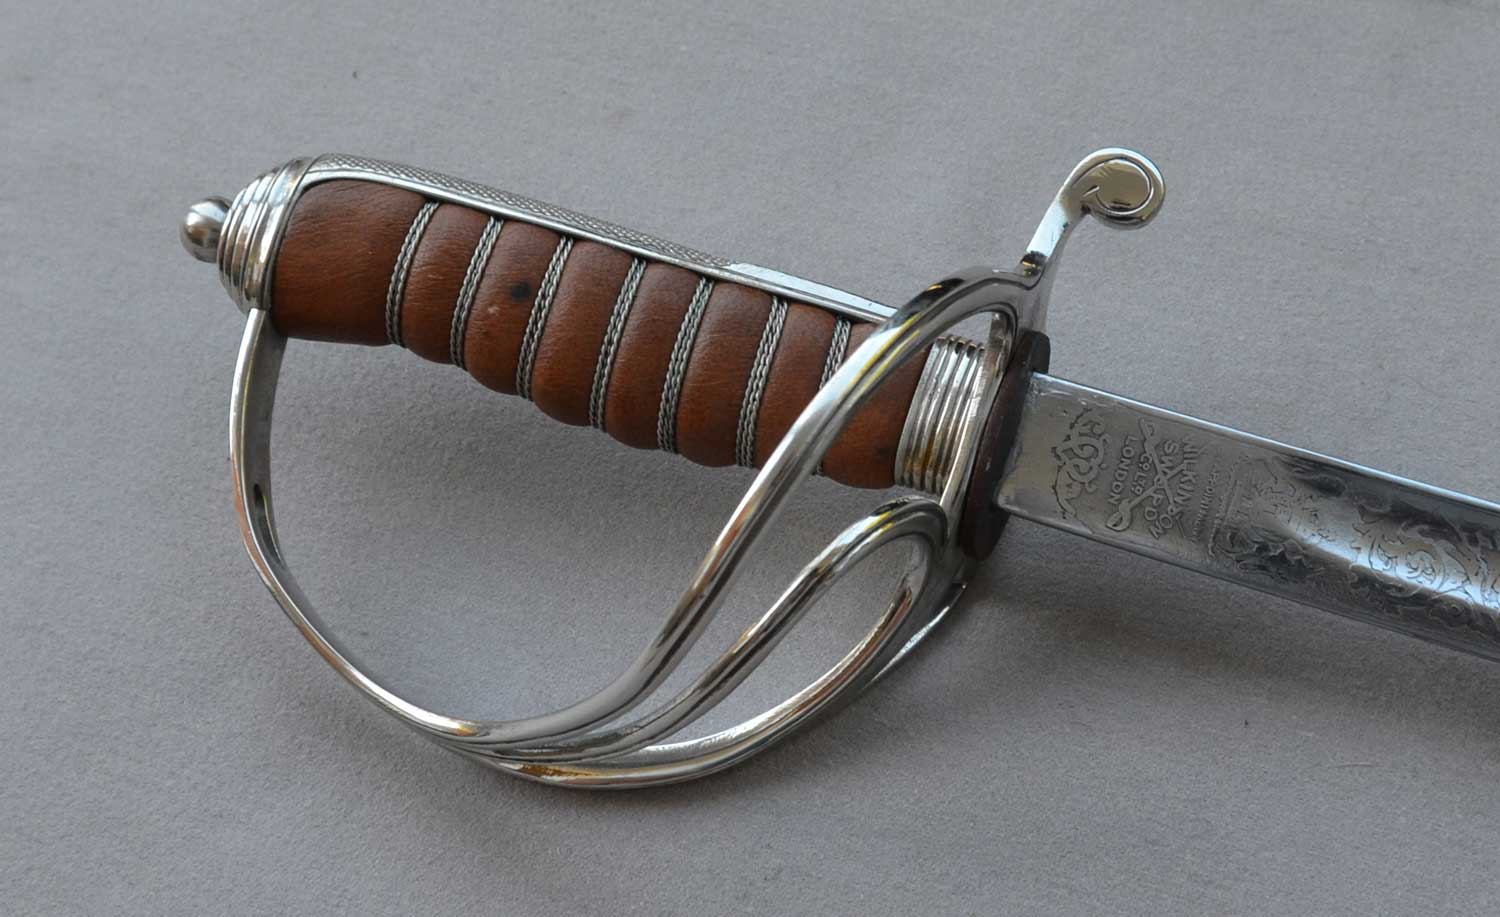 British, Royal Artillery Officer's Sword